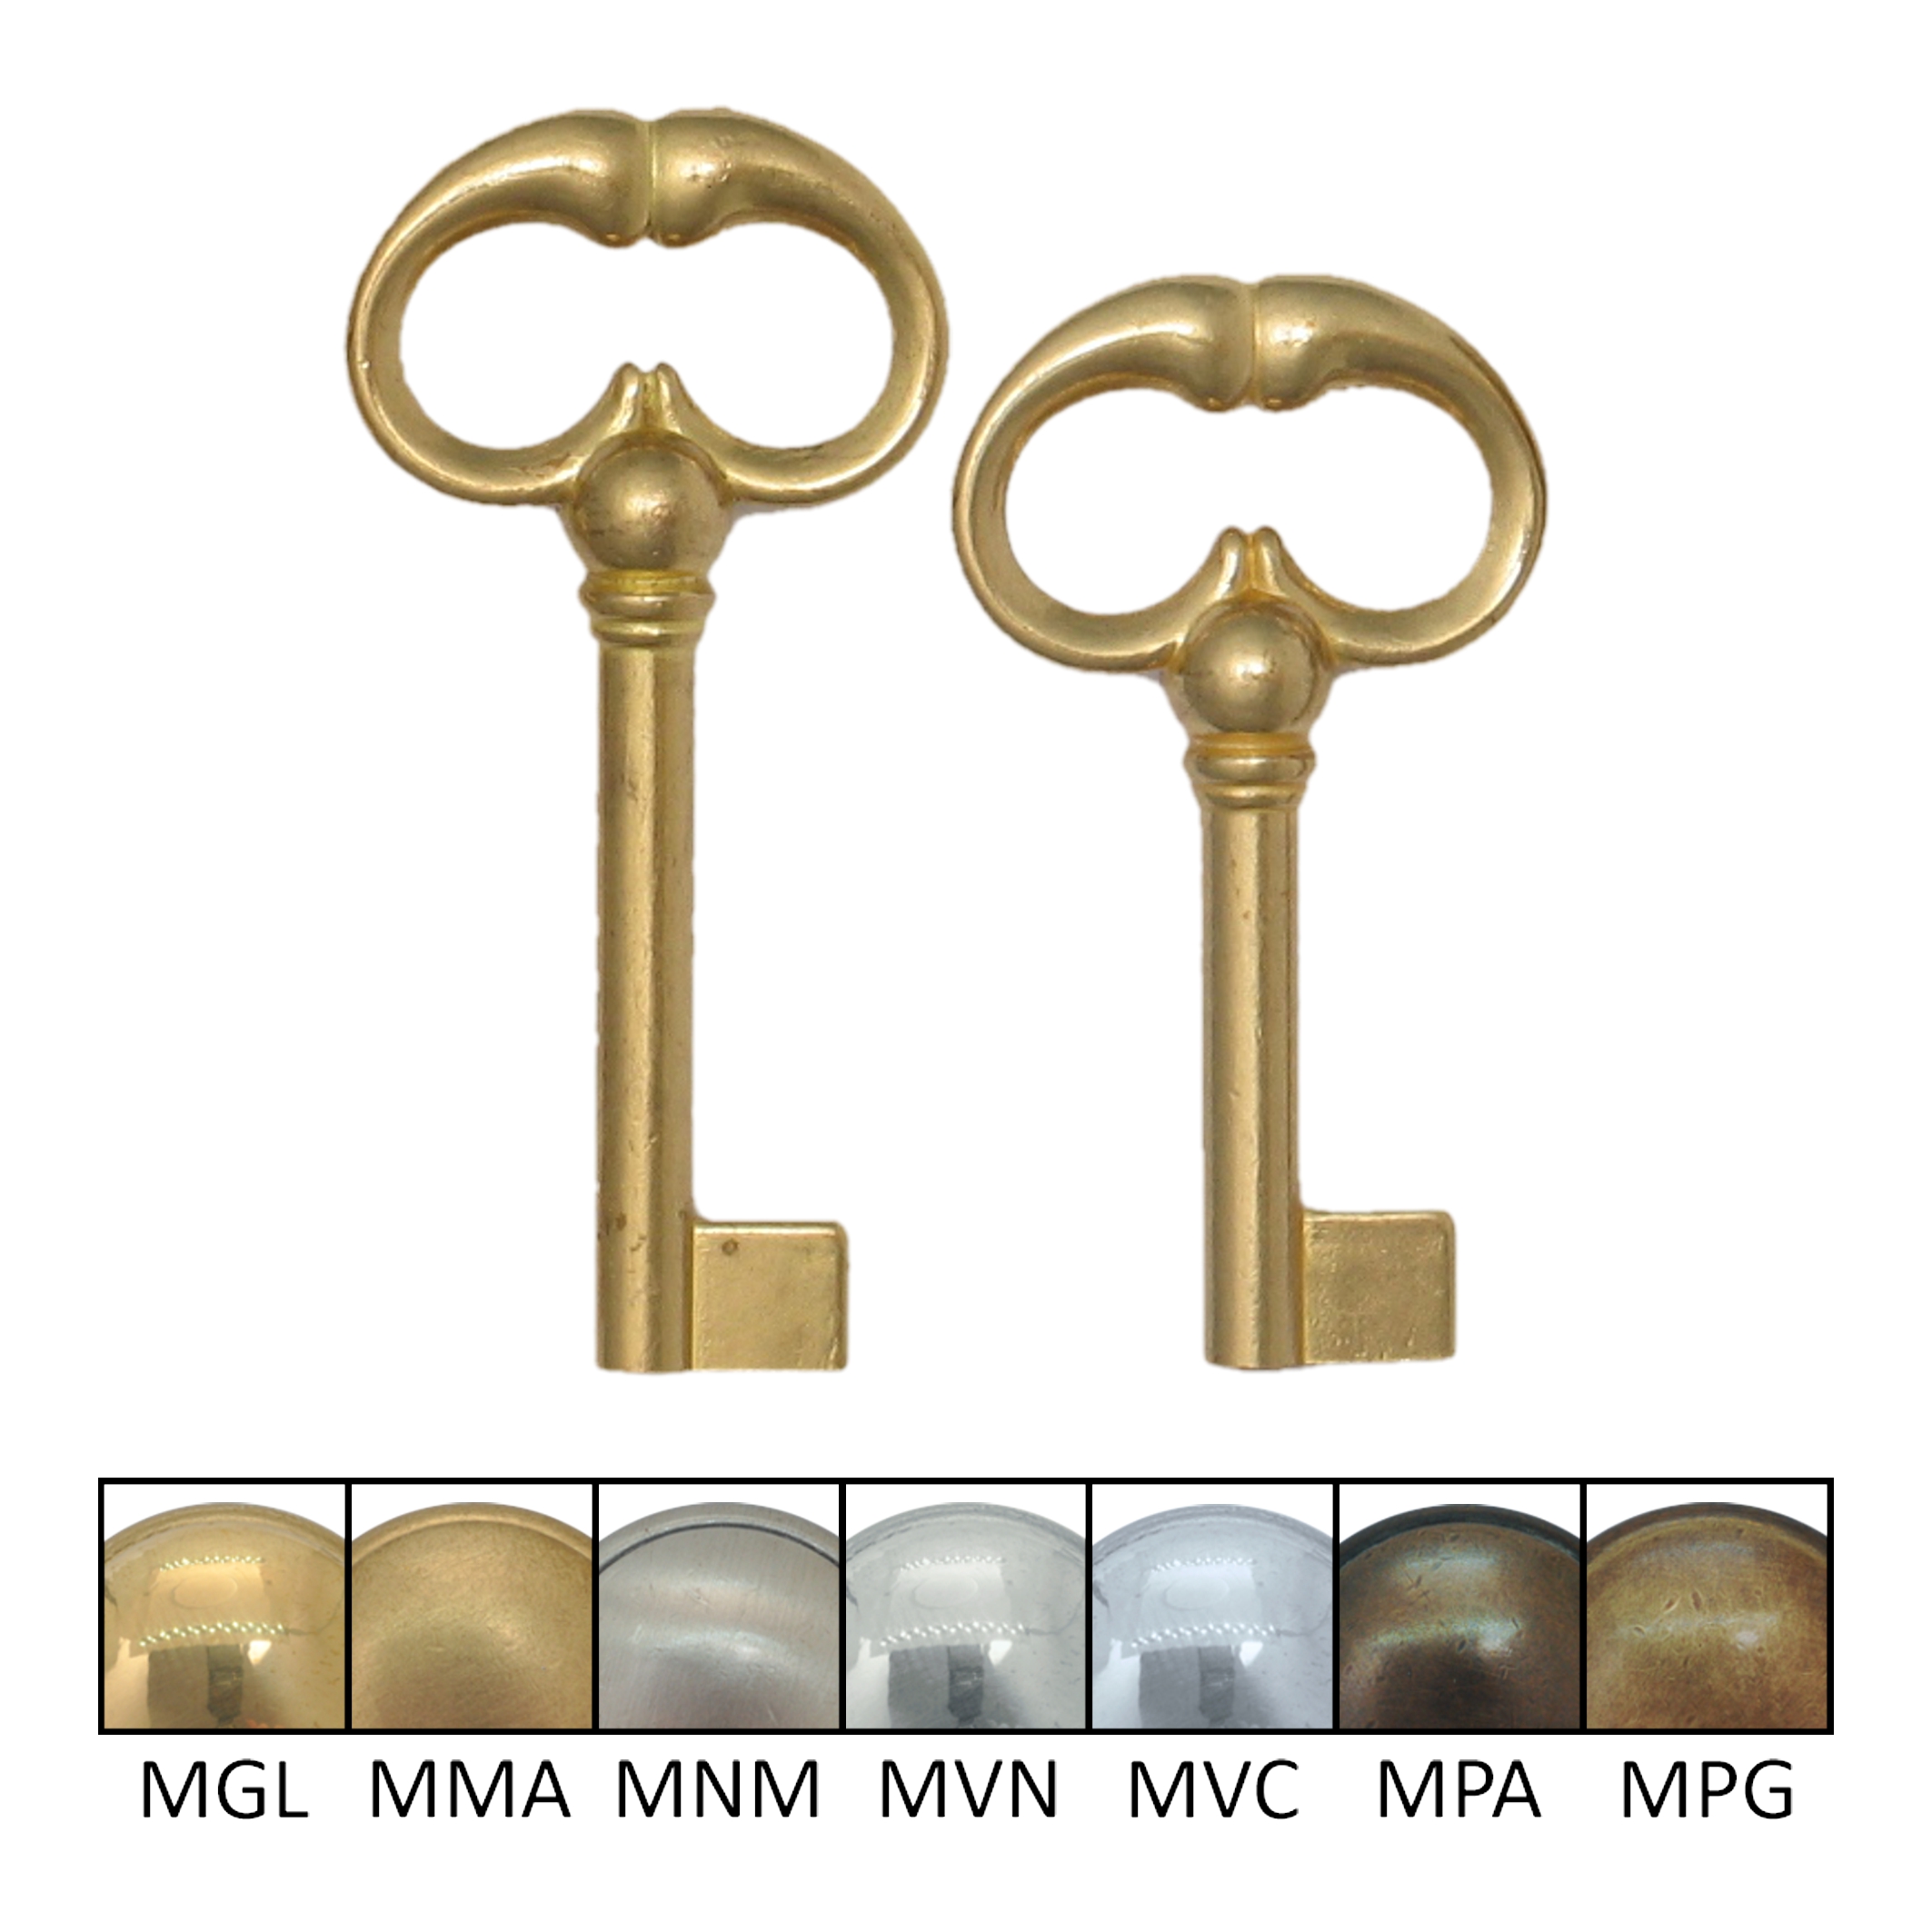 Metall Schlüssel alt und rostig, liegend, isoliert am weißen